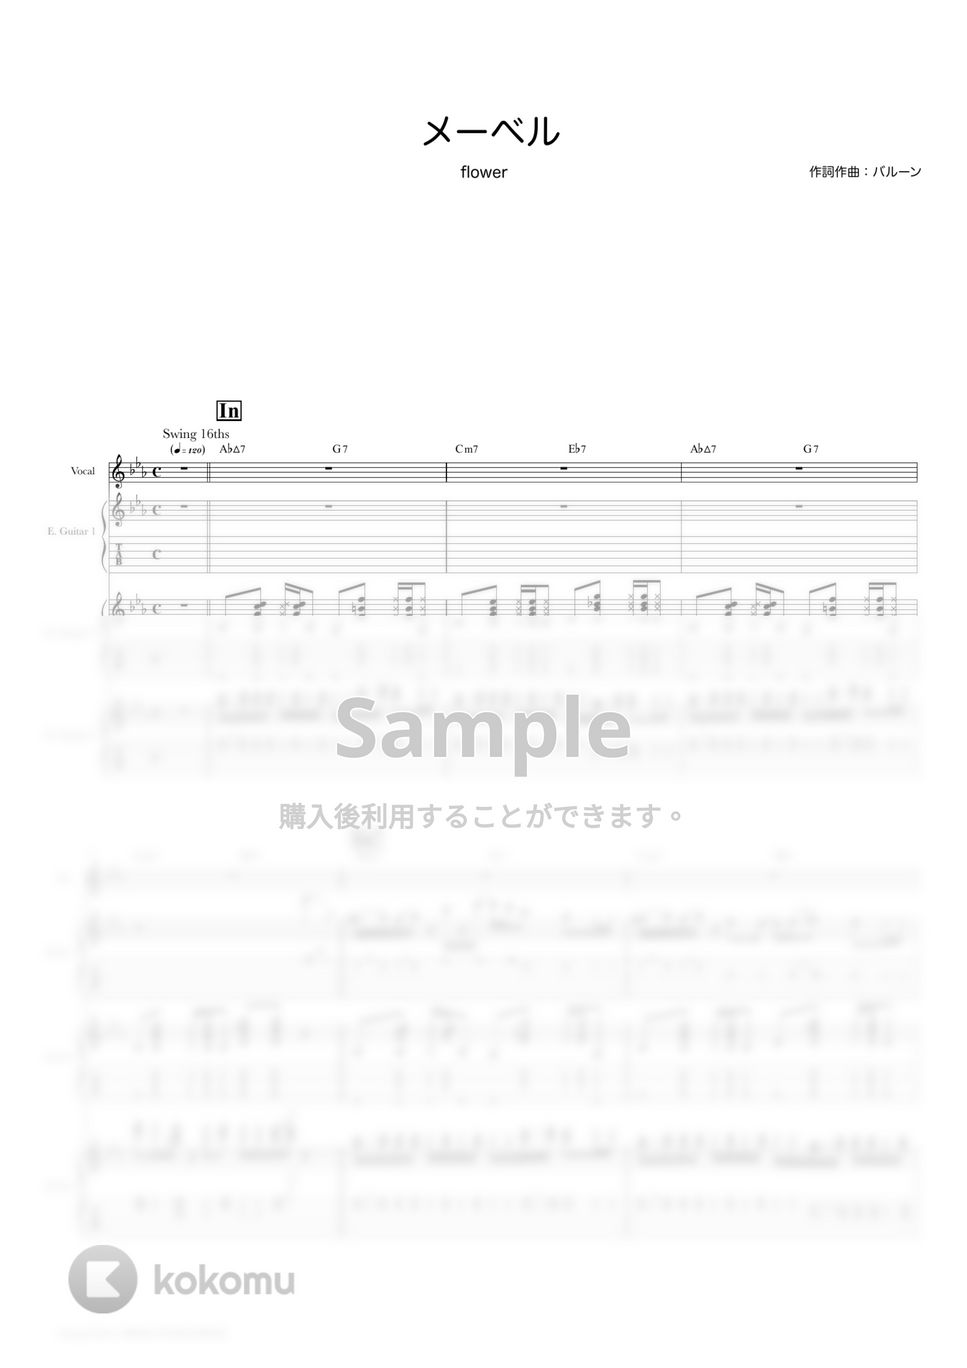 バルーン - メーベル (ギタースコア・歌詞・コード付き) by TRIAD GUITAR SCHOOL